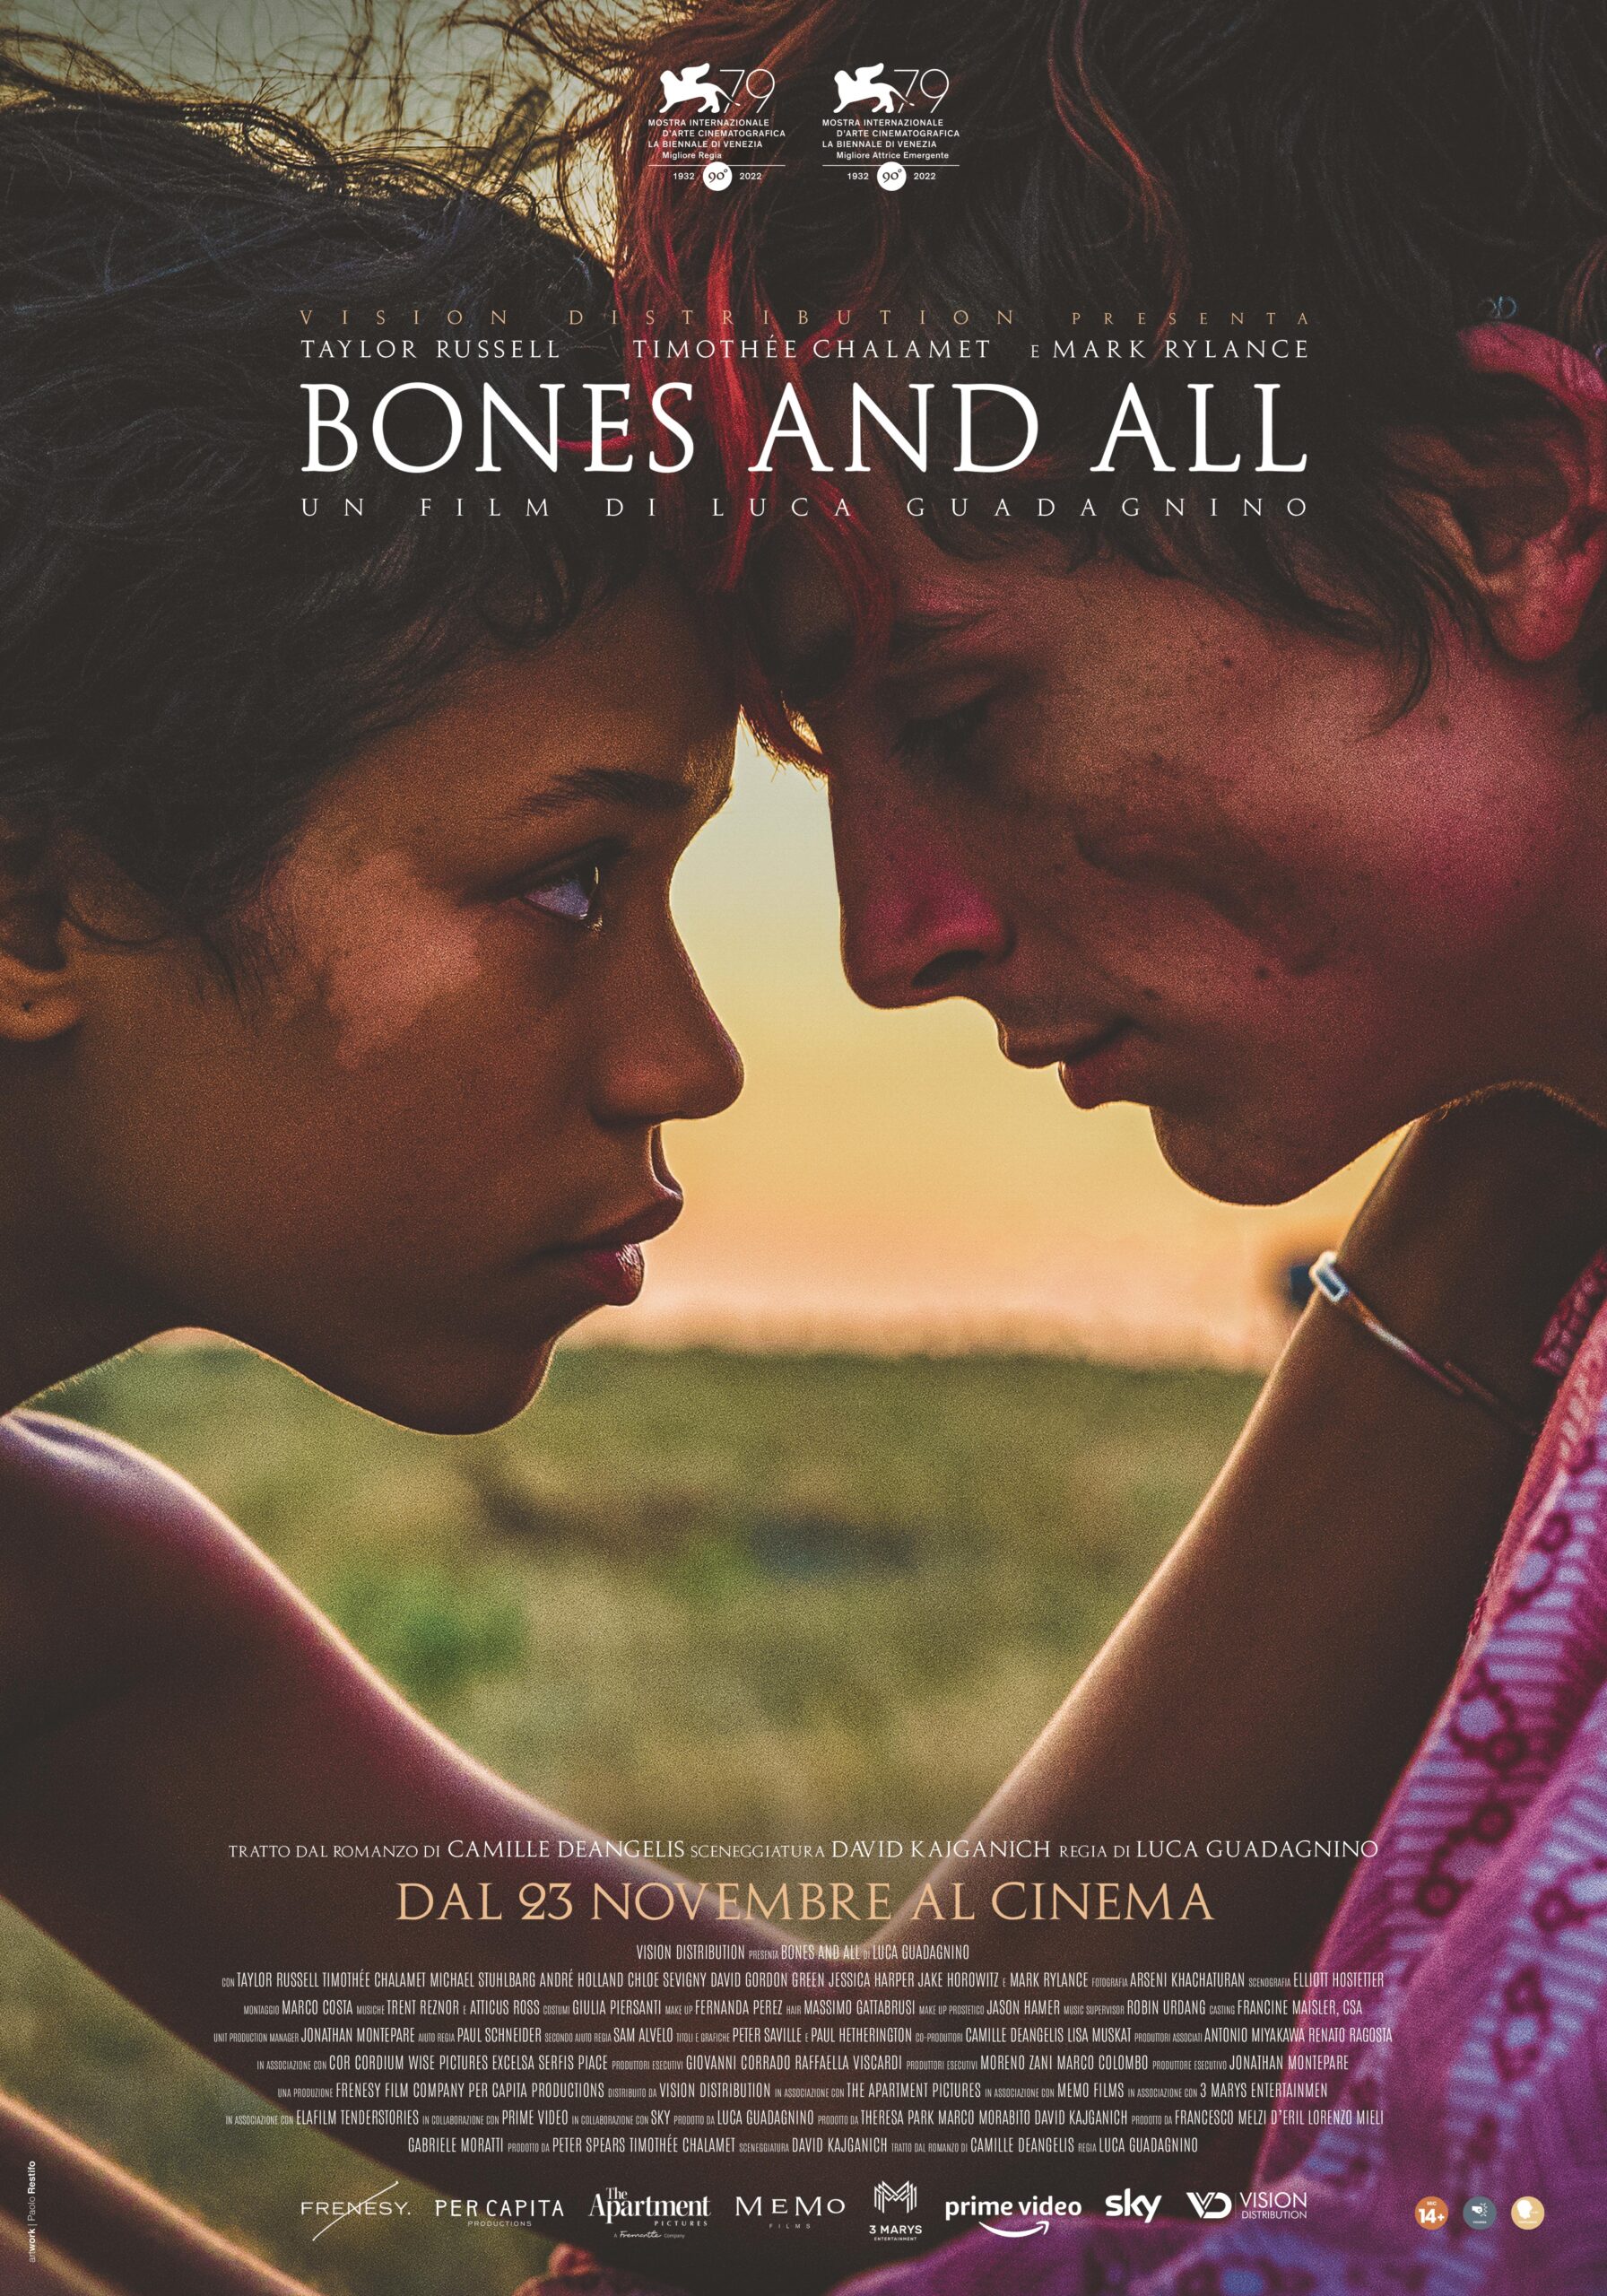 La locandina del film Bones and All di Luca Guadagnino